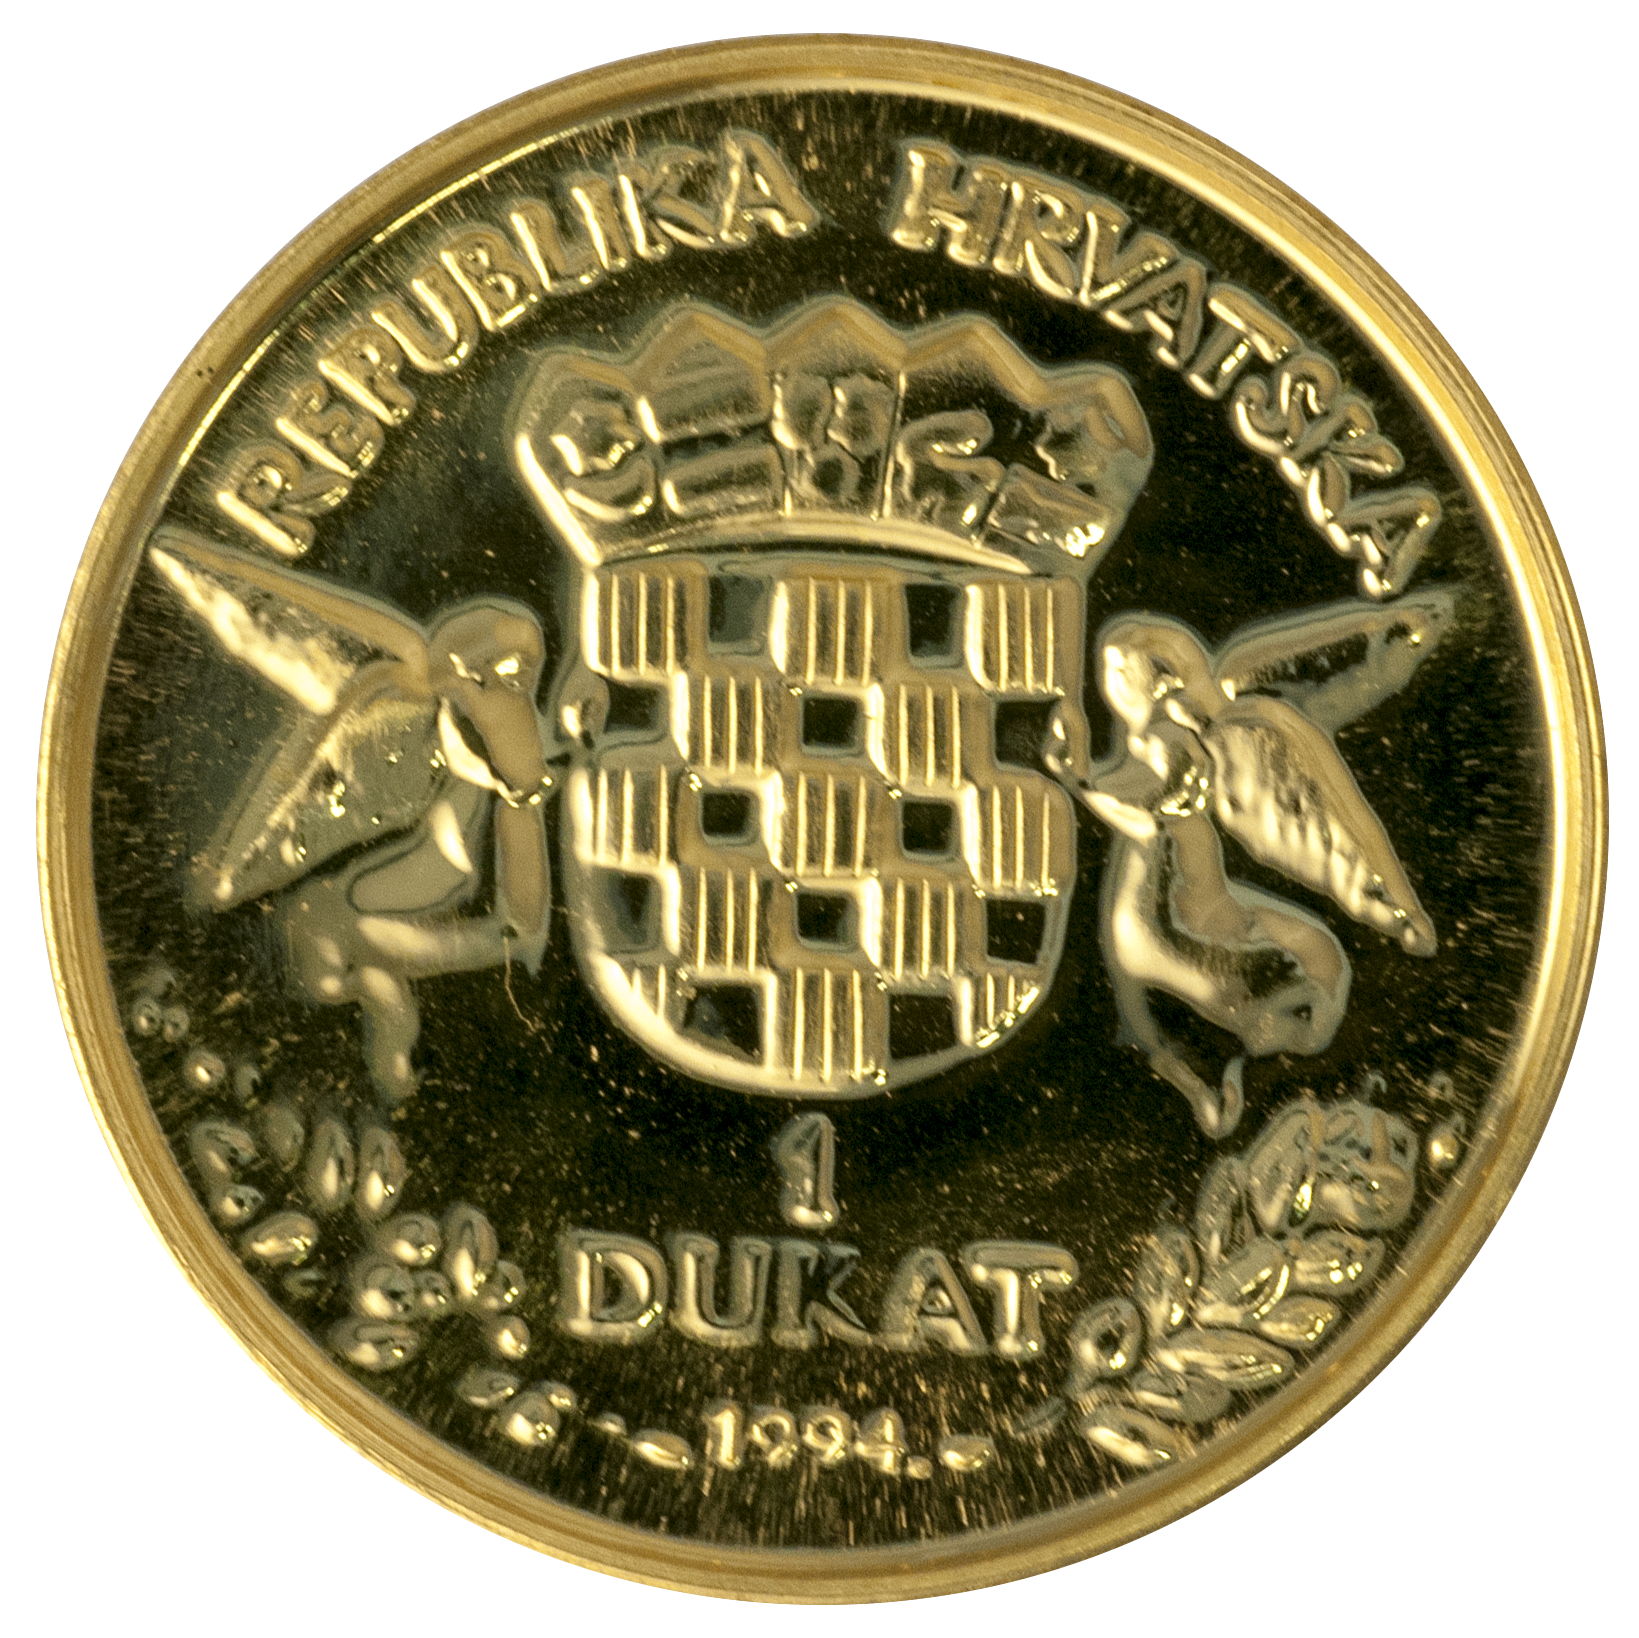 Валютный институт. Хорватская Республика монеты. Dukat хорватский бренд. Острова Хорватии монеты. Золото из Хорватии.